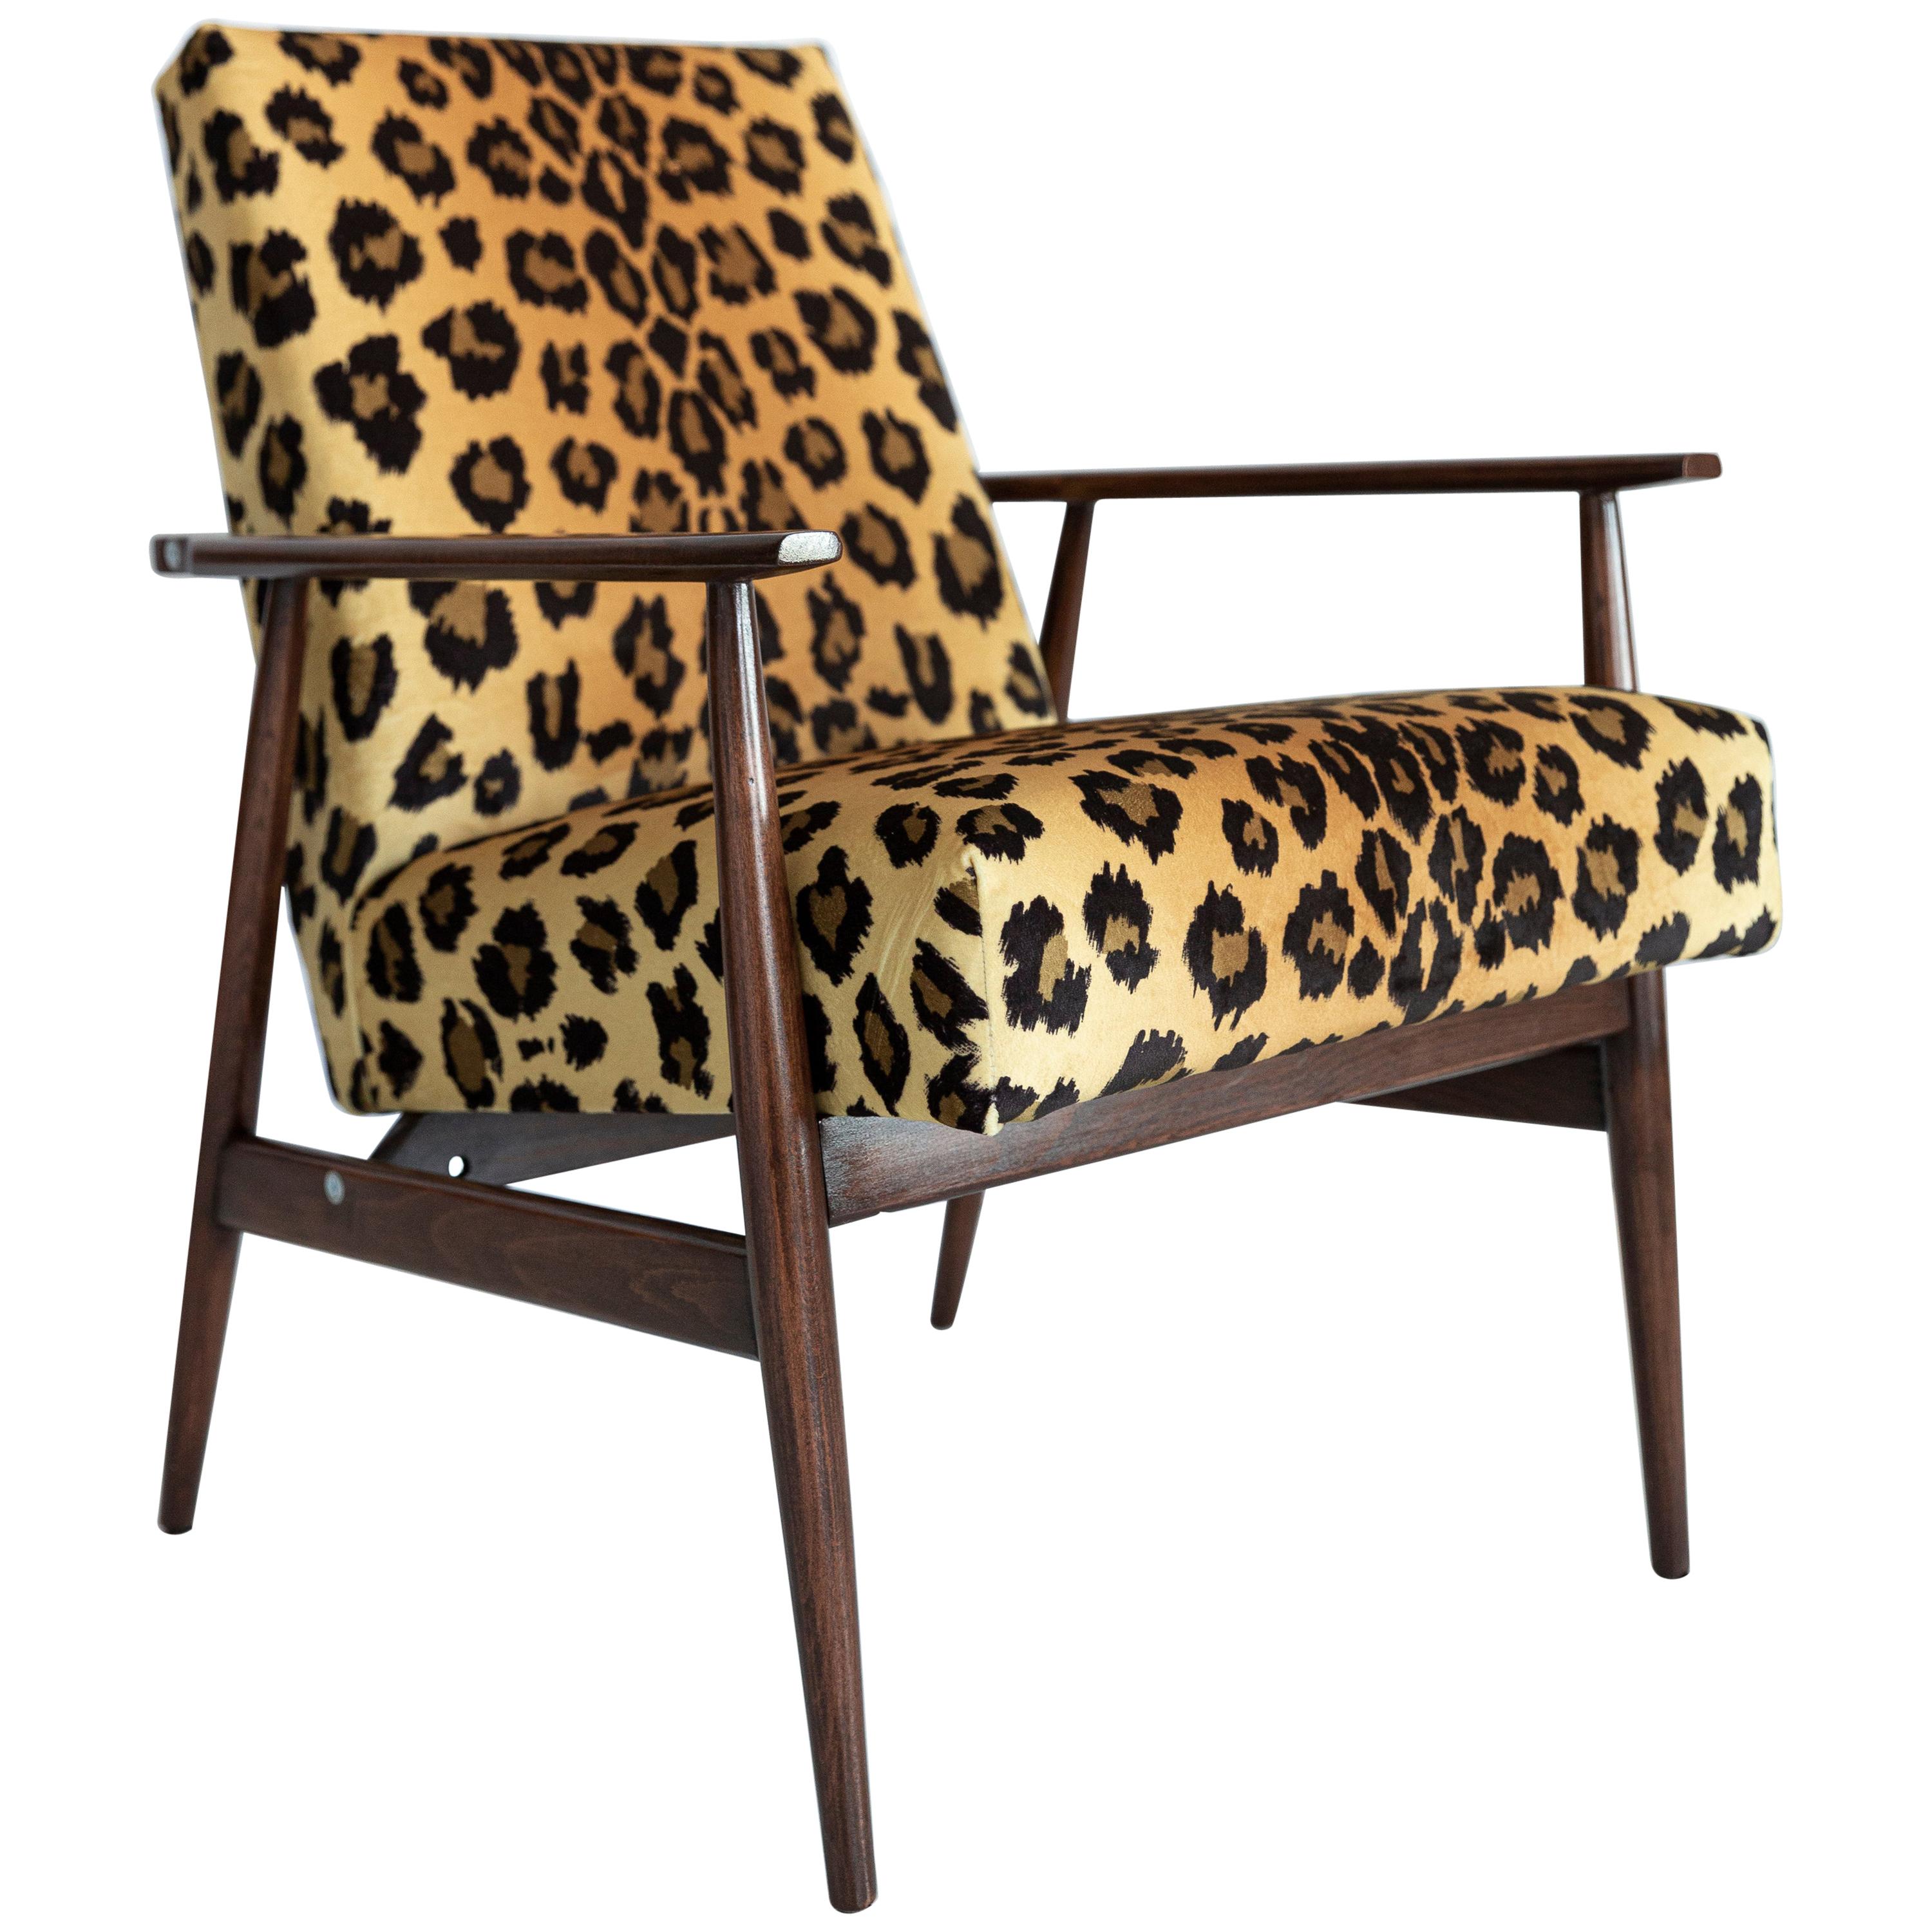 Midcentury-Sessel aus Samt mit Leopardenmuster und Dante, H. Lis, 1960er Jahre